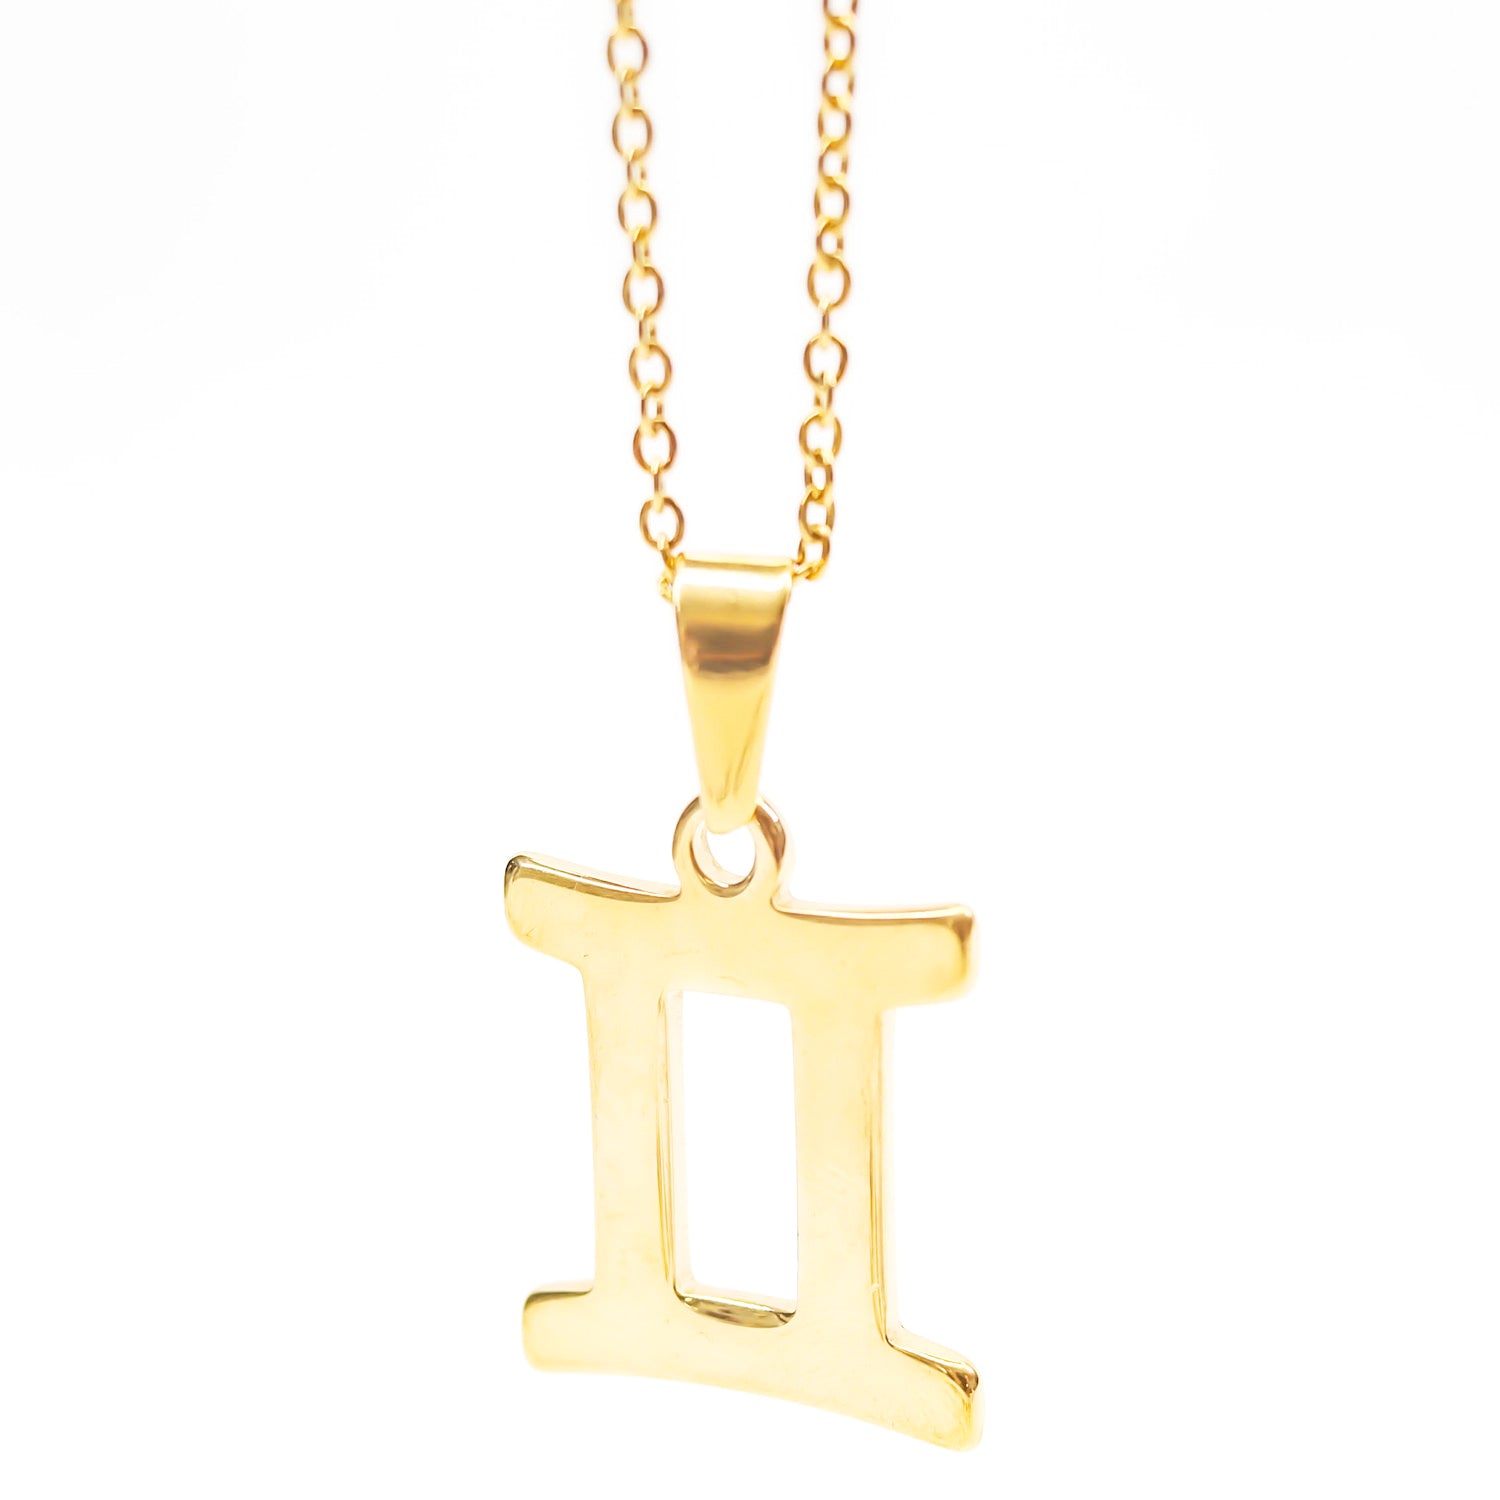 Colgante de acero inoxidable dorado con forma del signo del zodiaco Géminis de 28mm